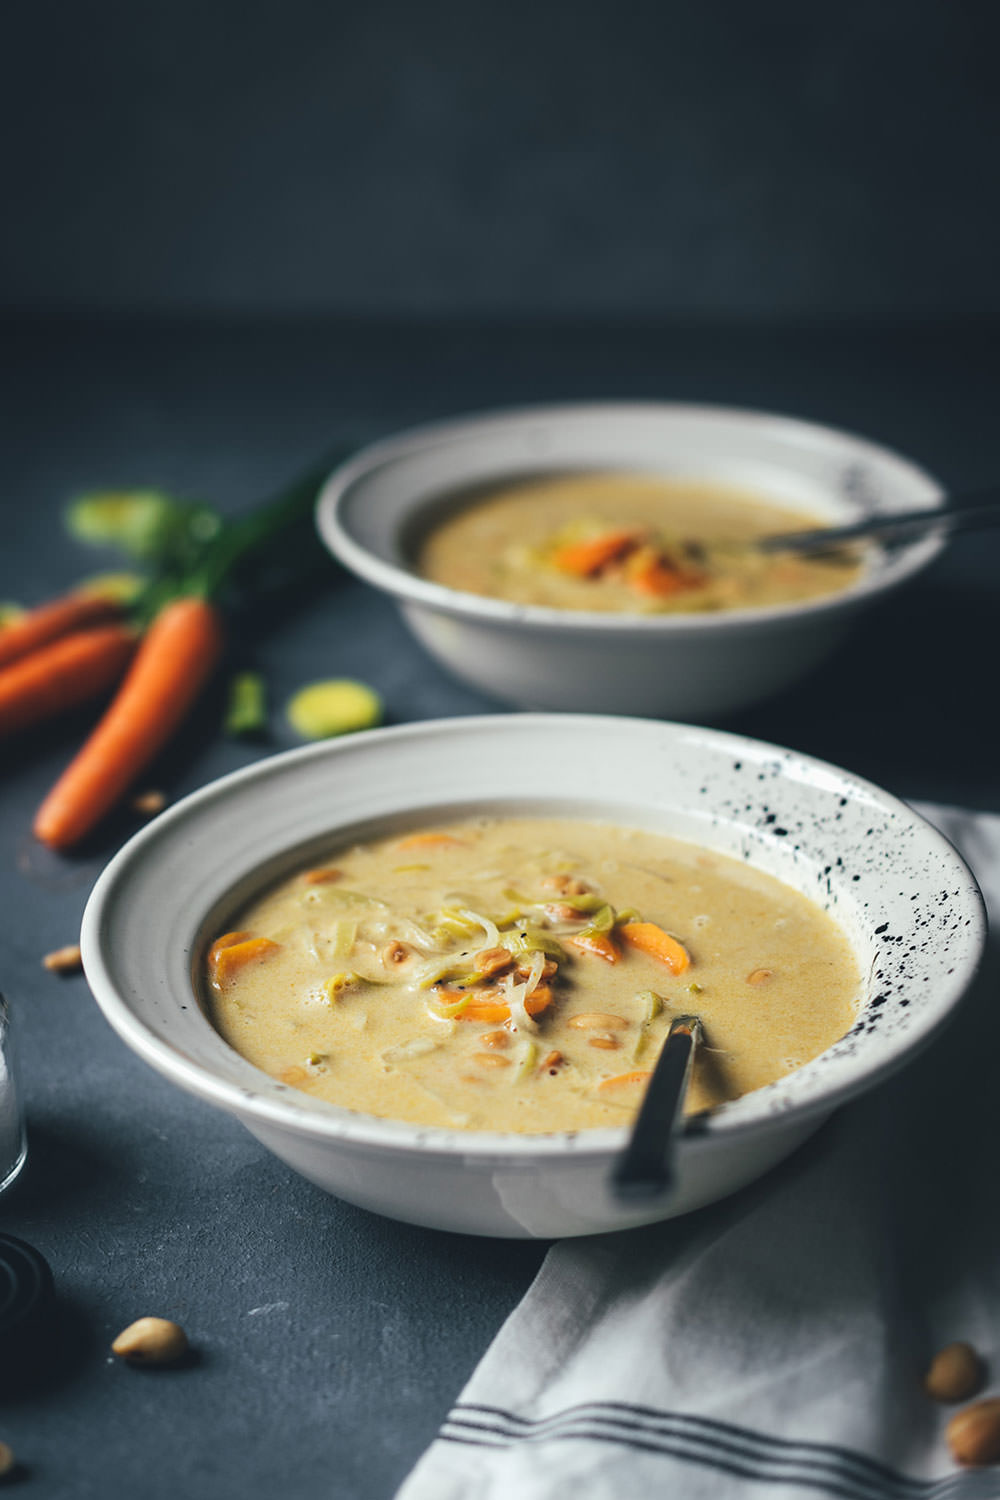 Rezept für würzige Erdnuss-Suppe mit Currypaste, Gemüse und Kokosmilch | wärmend und wohltuend in den kalten Monaten | moeyskitchen.com #suppe #soup #erdnusssuppe #curry #currypaste #rezept #vegetarisch #foodblogger